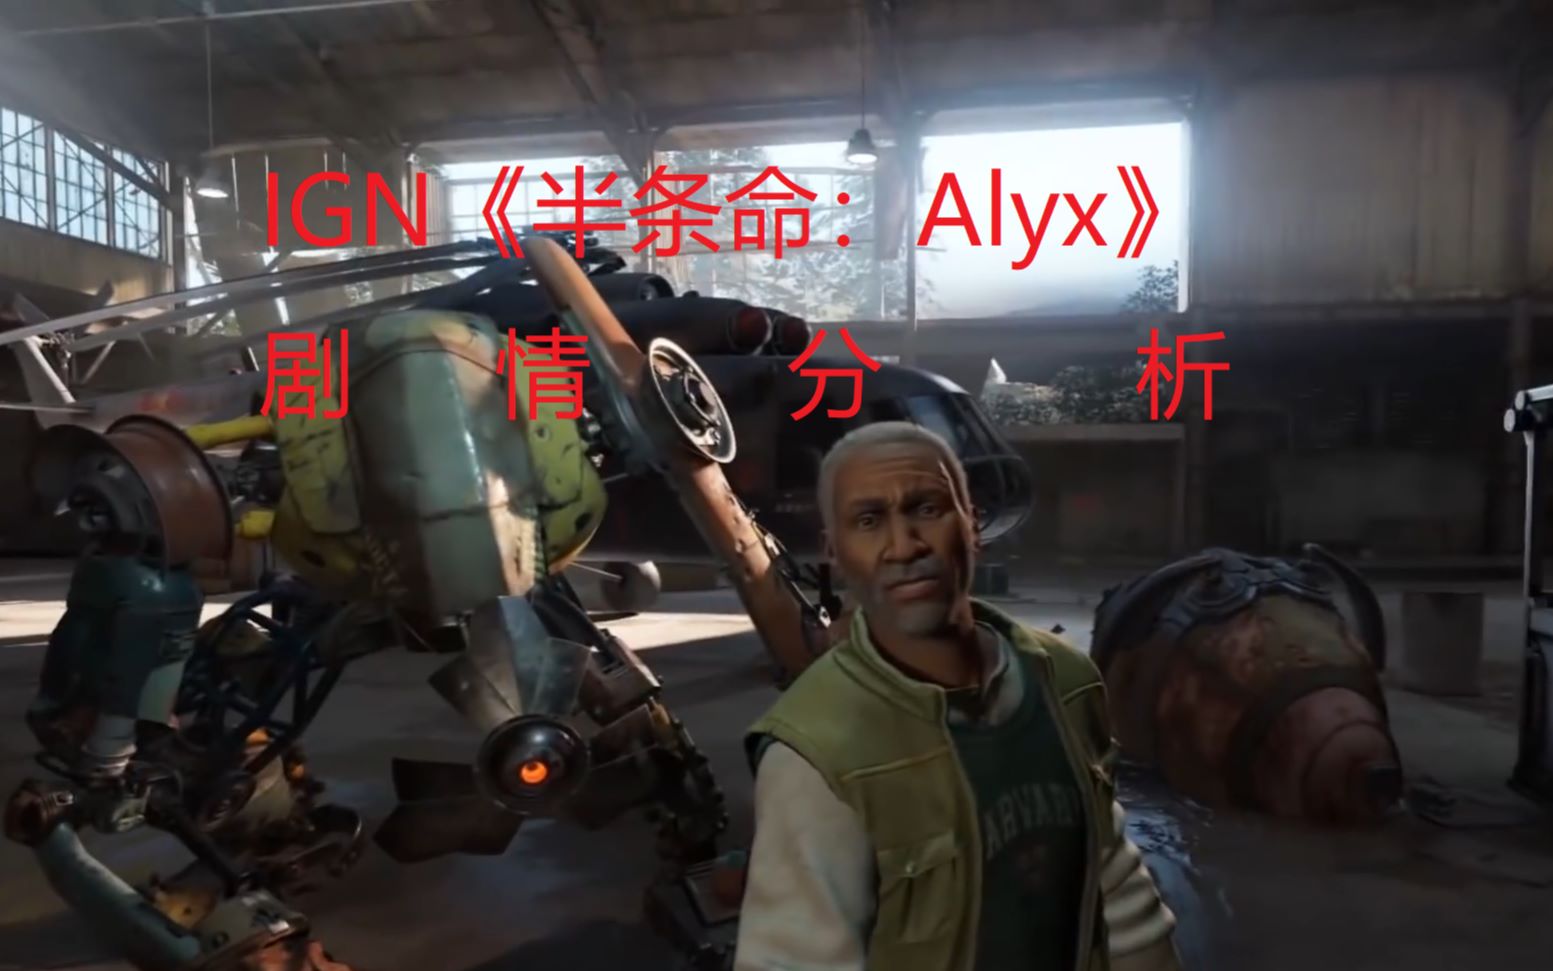 ign:【中文字幕】《半条命:alyx》剧情及其结局分析